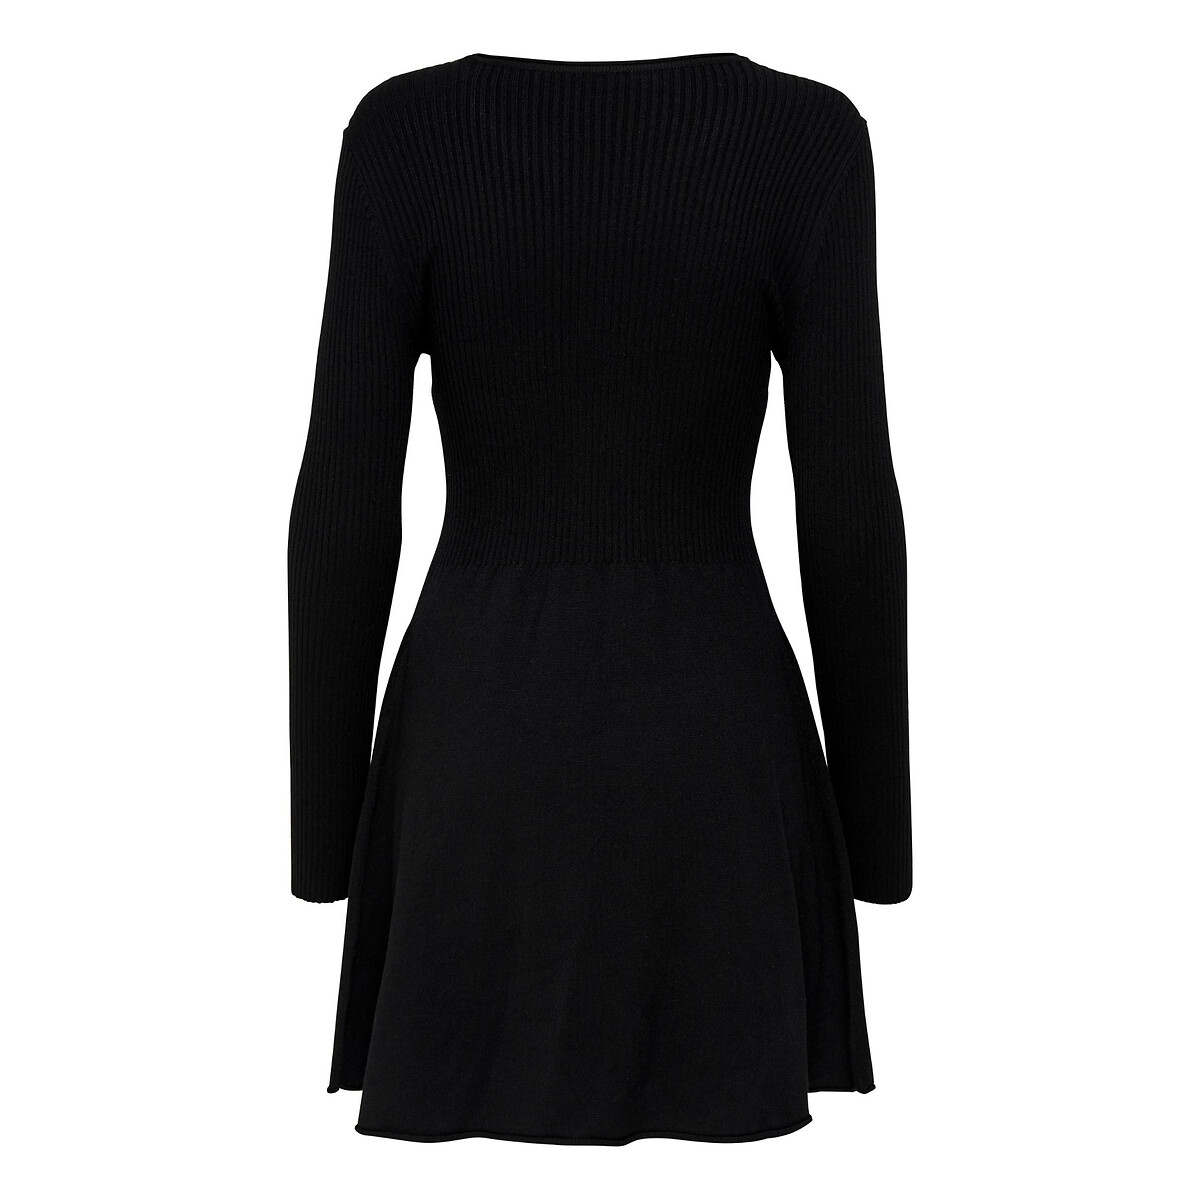 Платье короткое расклешенное с длинными рукавами M черный платье laredoute платье короткое расклешенное с длинными рукавами 44 синий